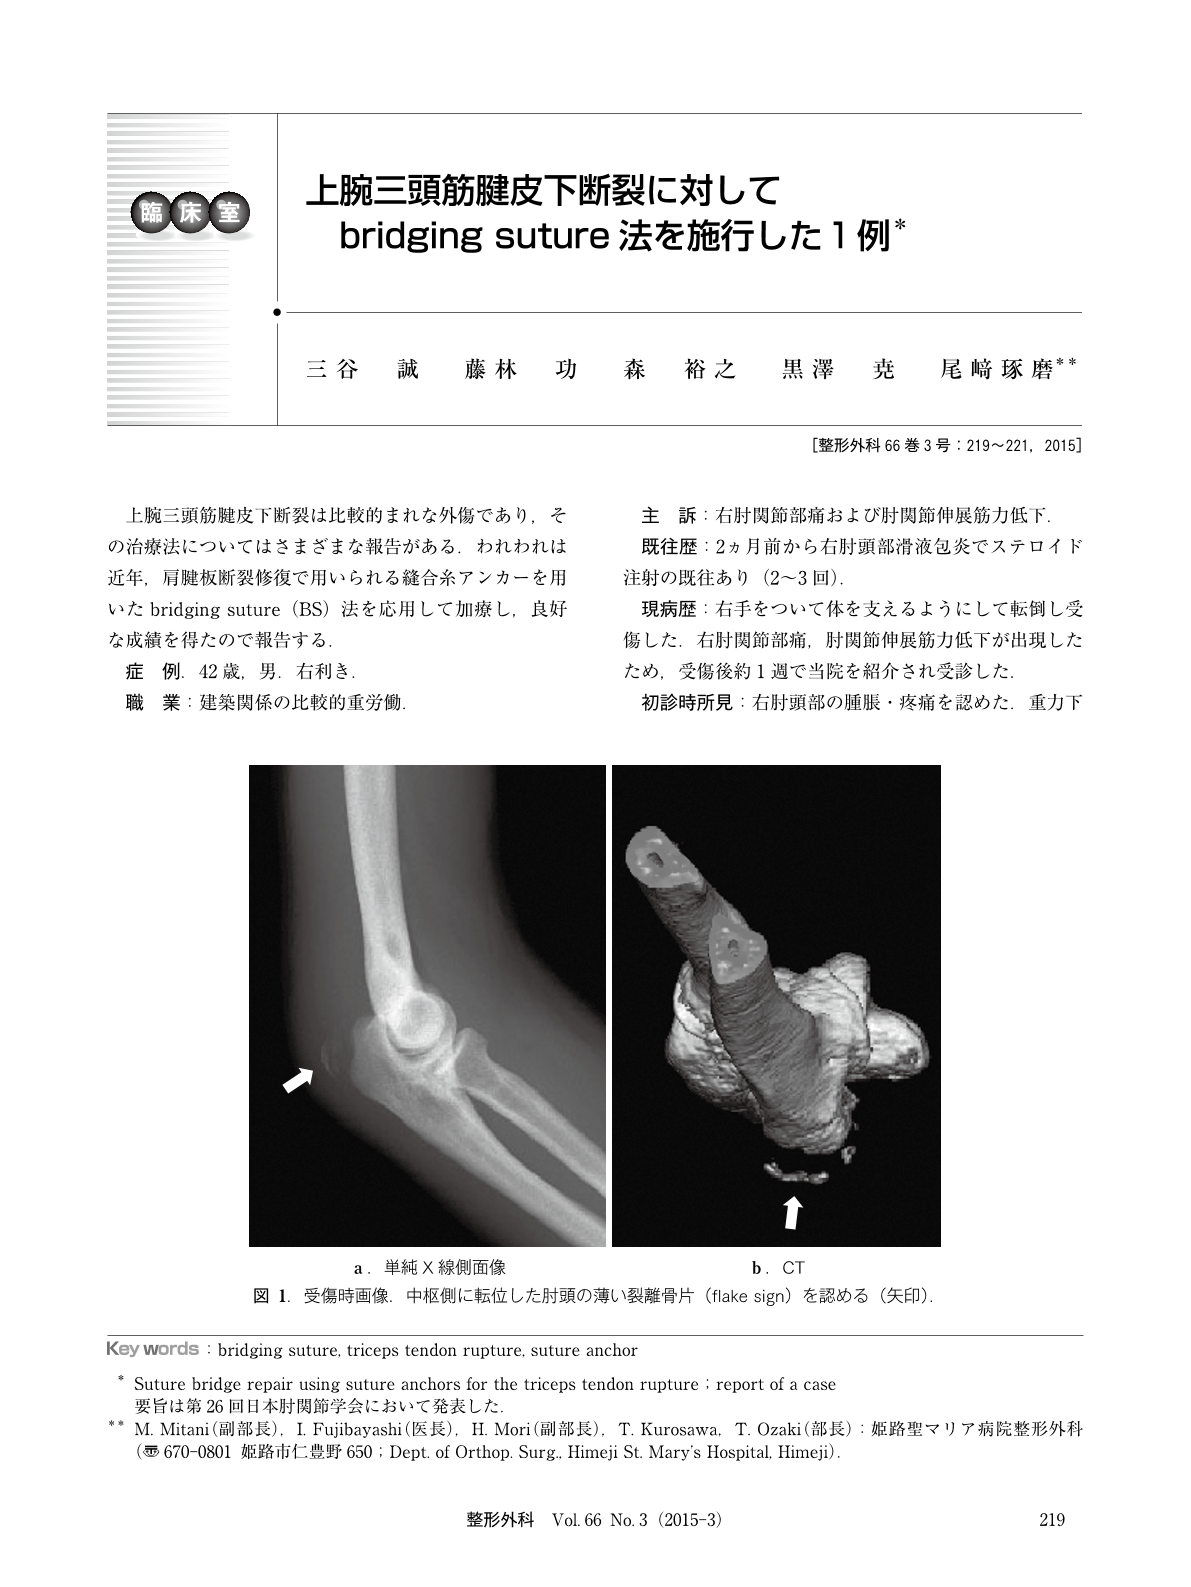 上腕三頭筋腱皮下断裂に対してbridging Suture法を施行した1例 臨床雑誌整形外科 66巻3号 医書 Jp